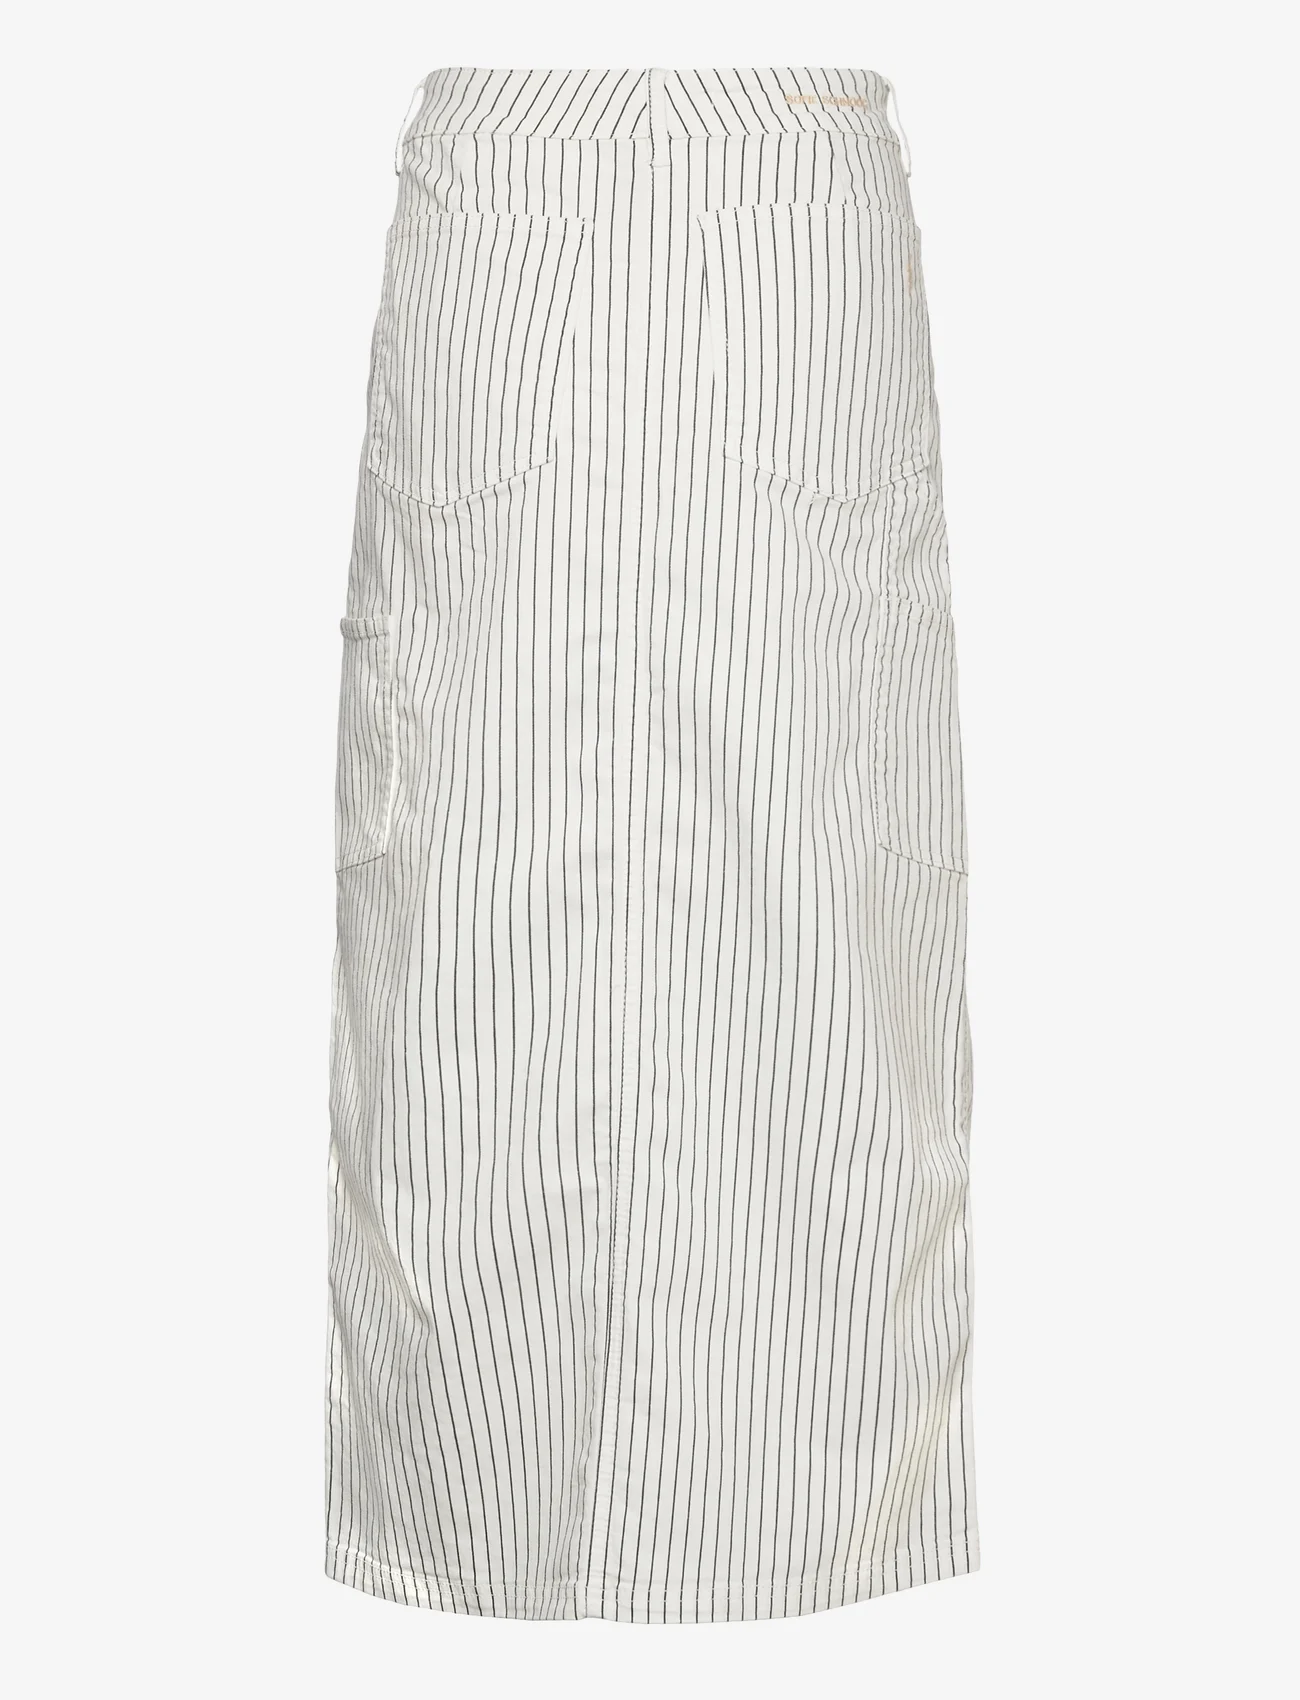 Sofie Schnoor - Skirt - lange rokken - off white striped - 1